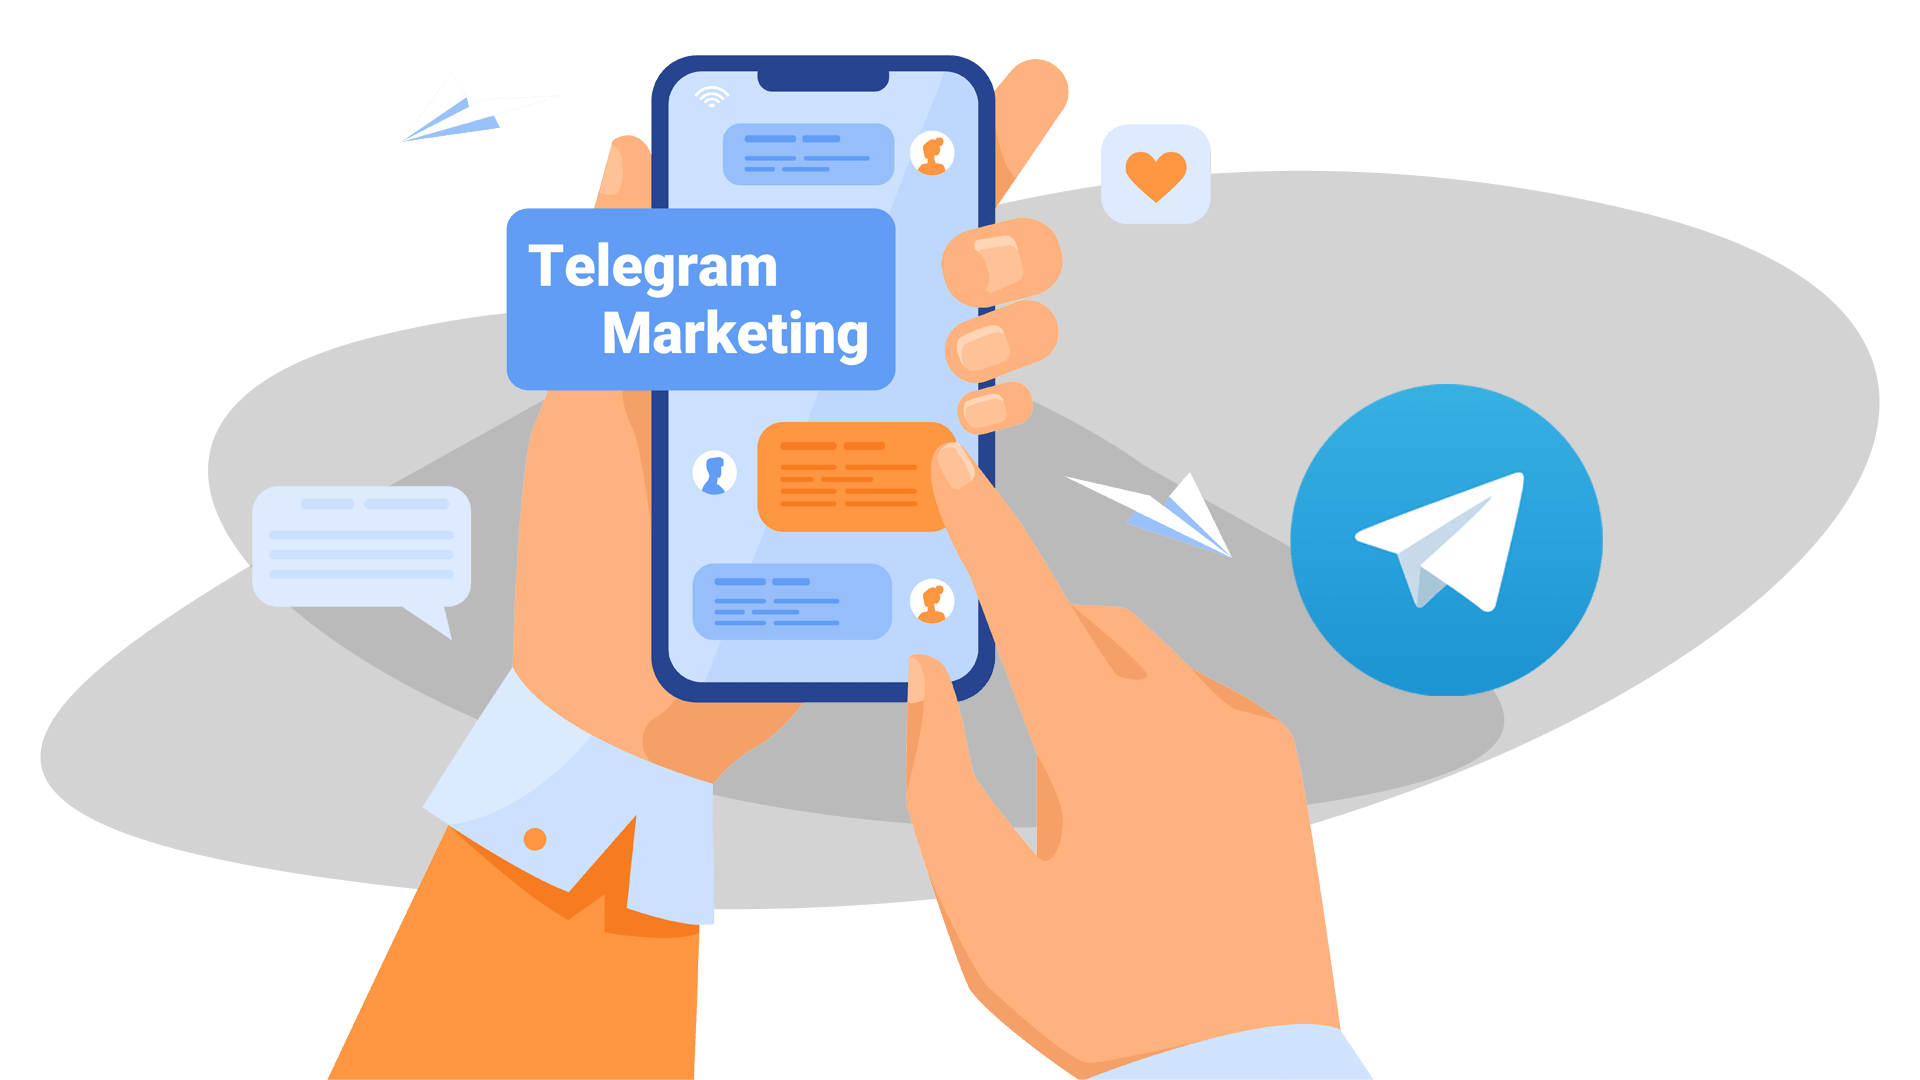 تبلیغات در تلگرام - بازاریابی تلگرامی - کمپین تبلیغاتی تلگرامی - دیما